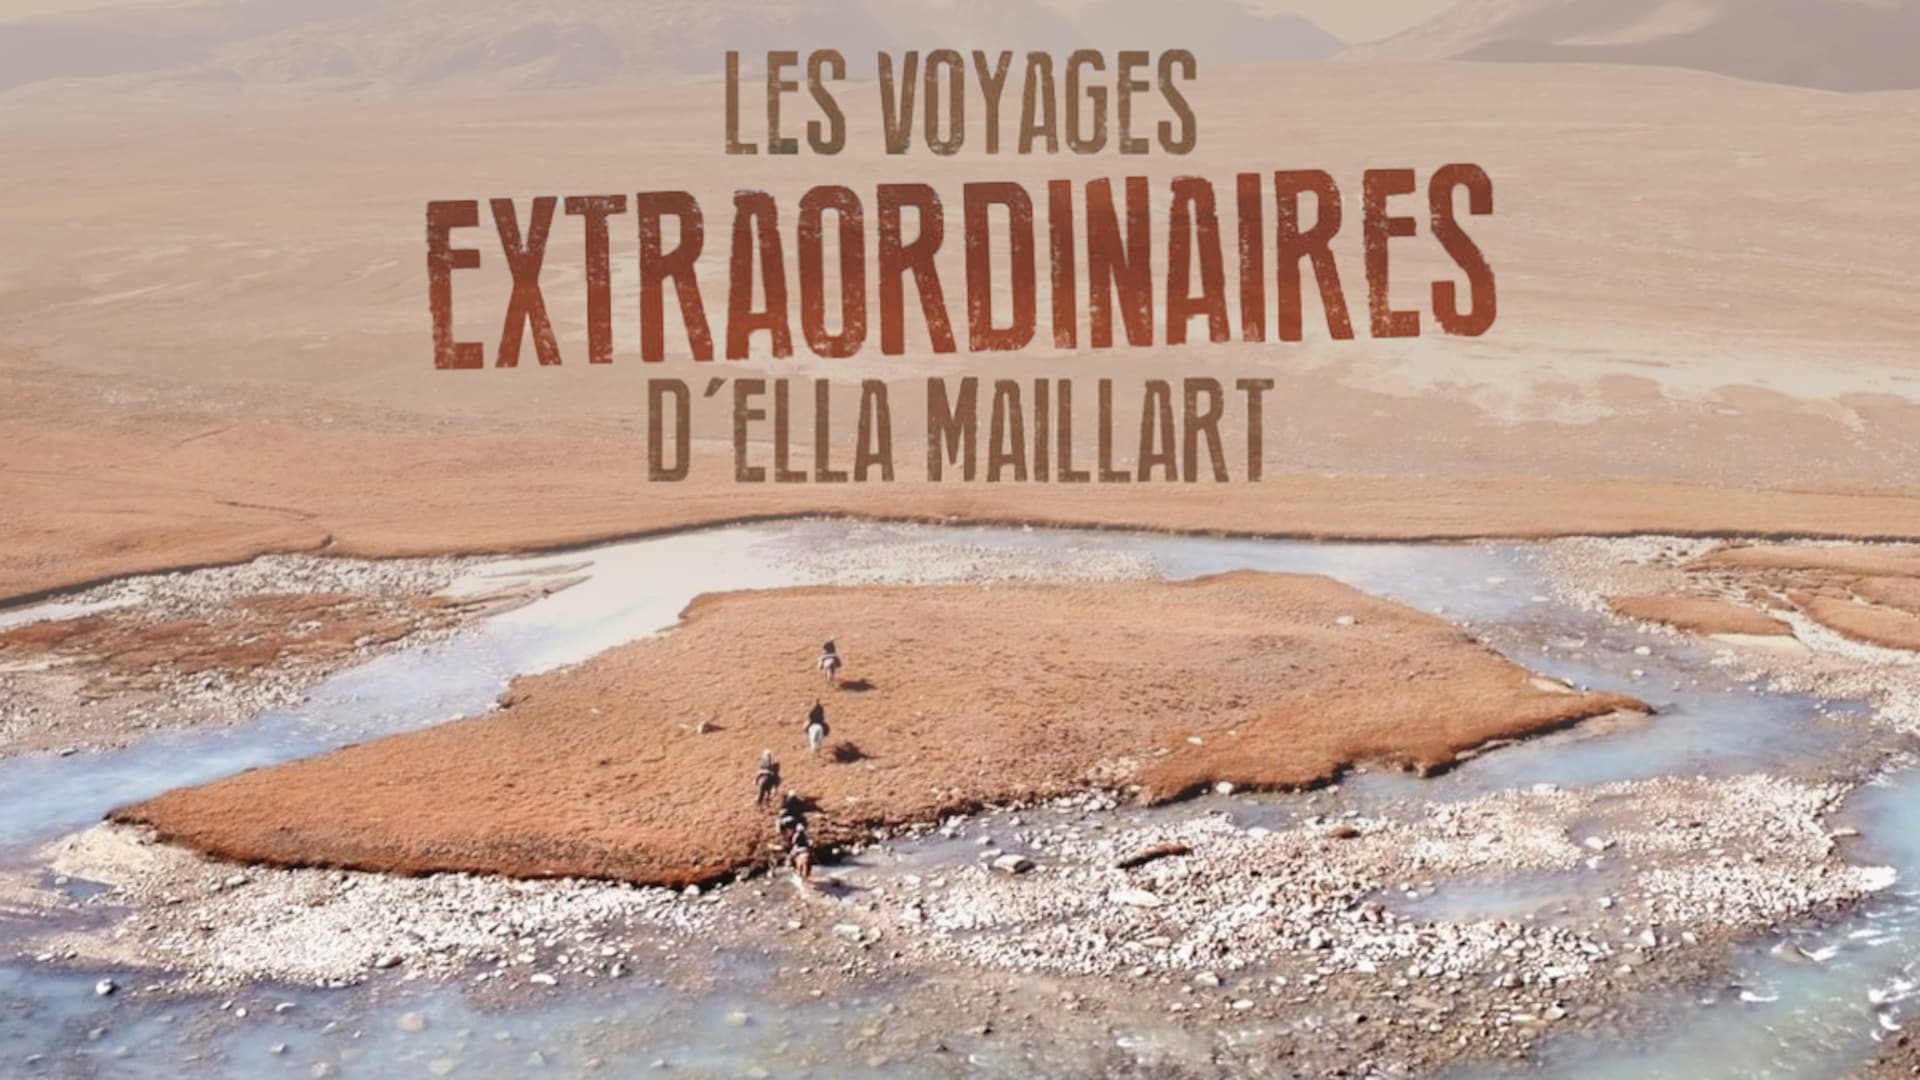 Die aussergewöhnlichen Reisen von Ella Maillart